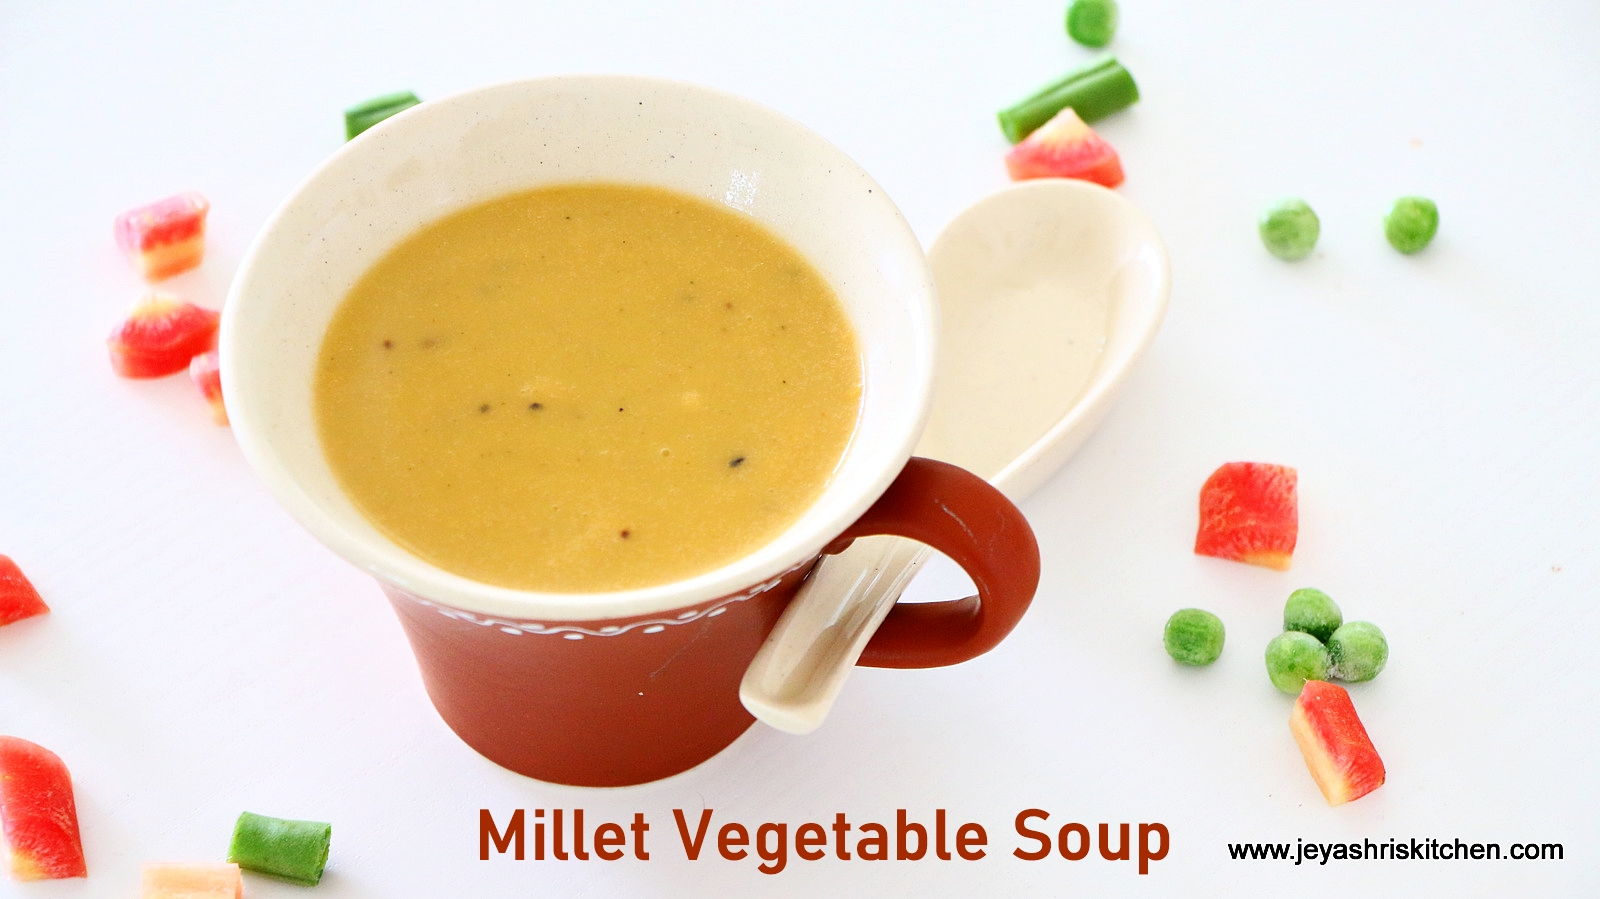 Millet vegetable soup